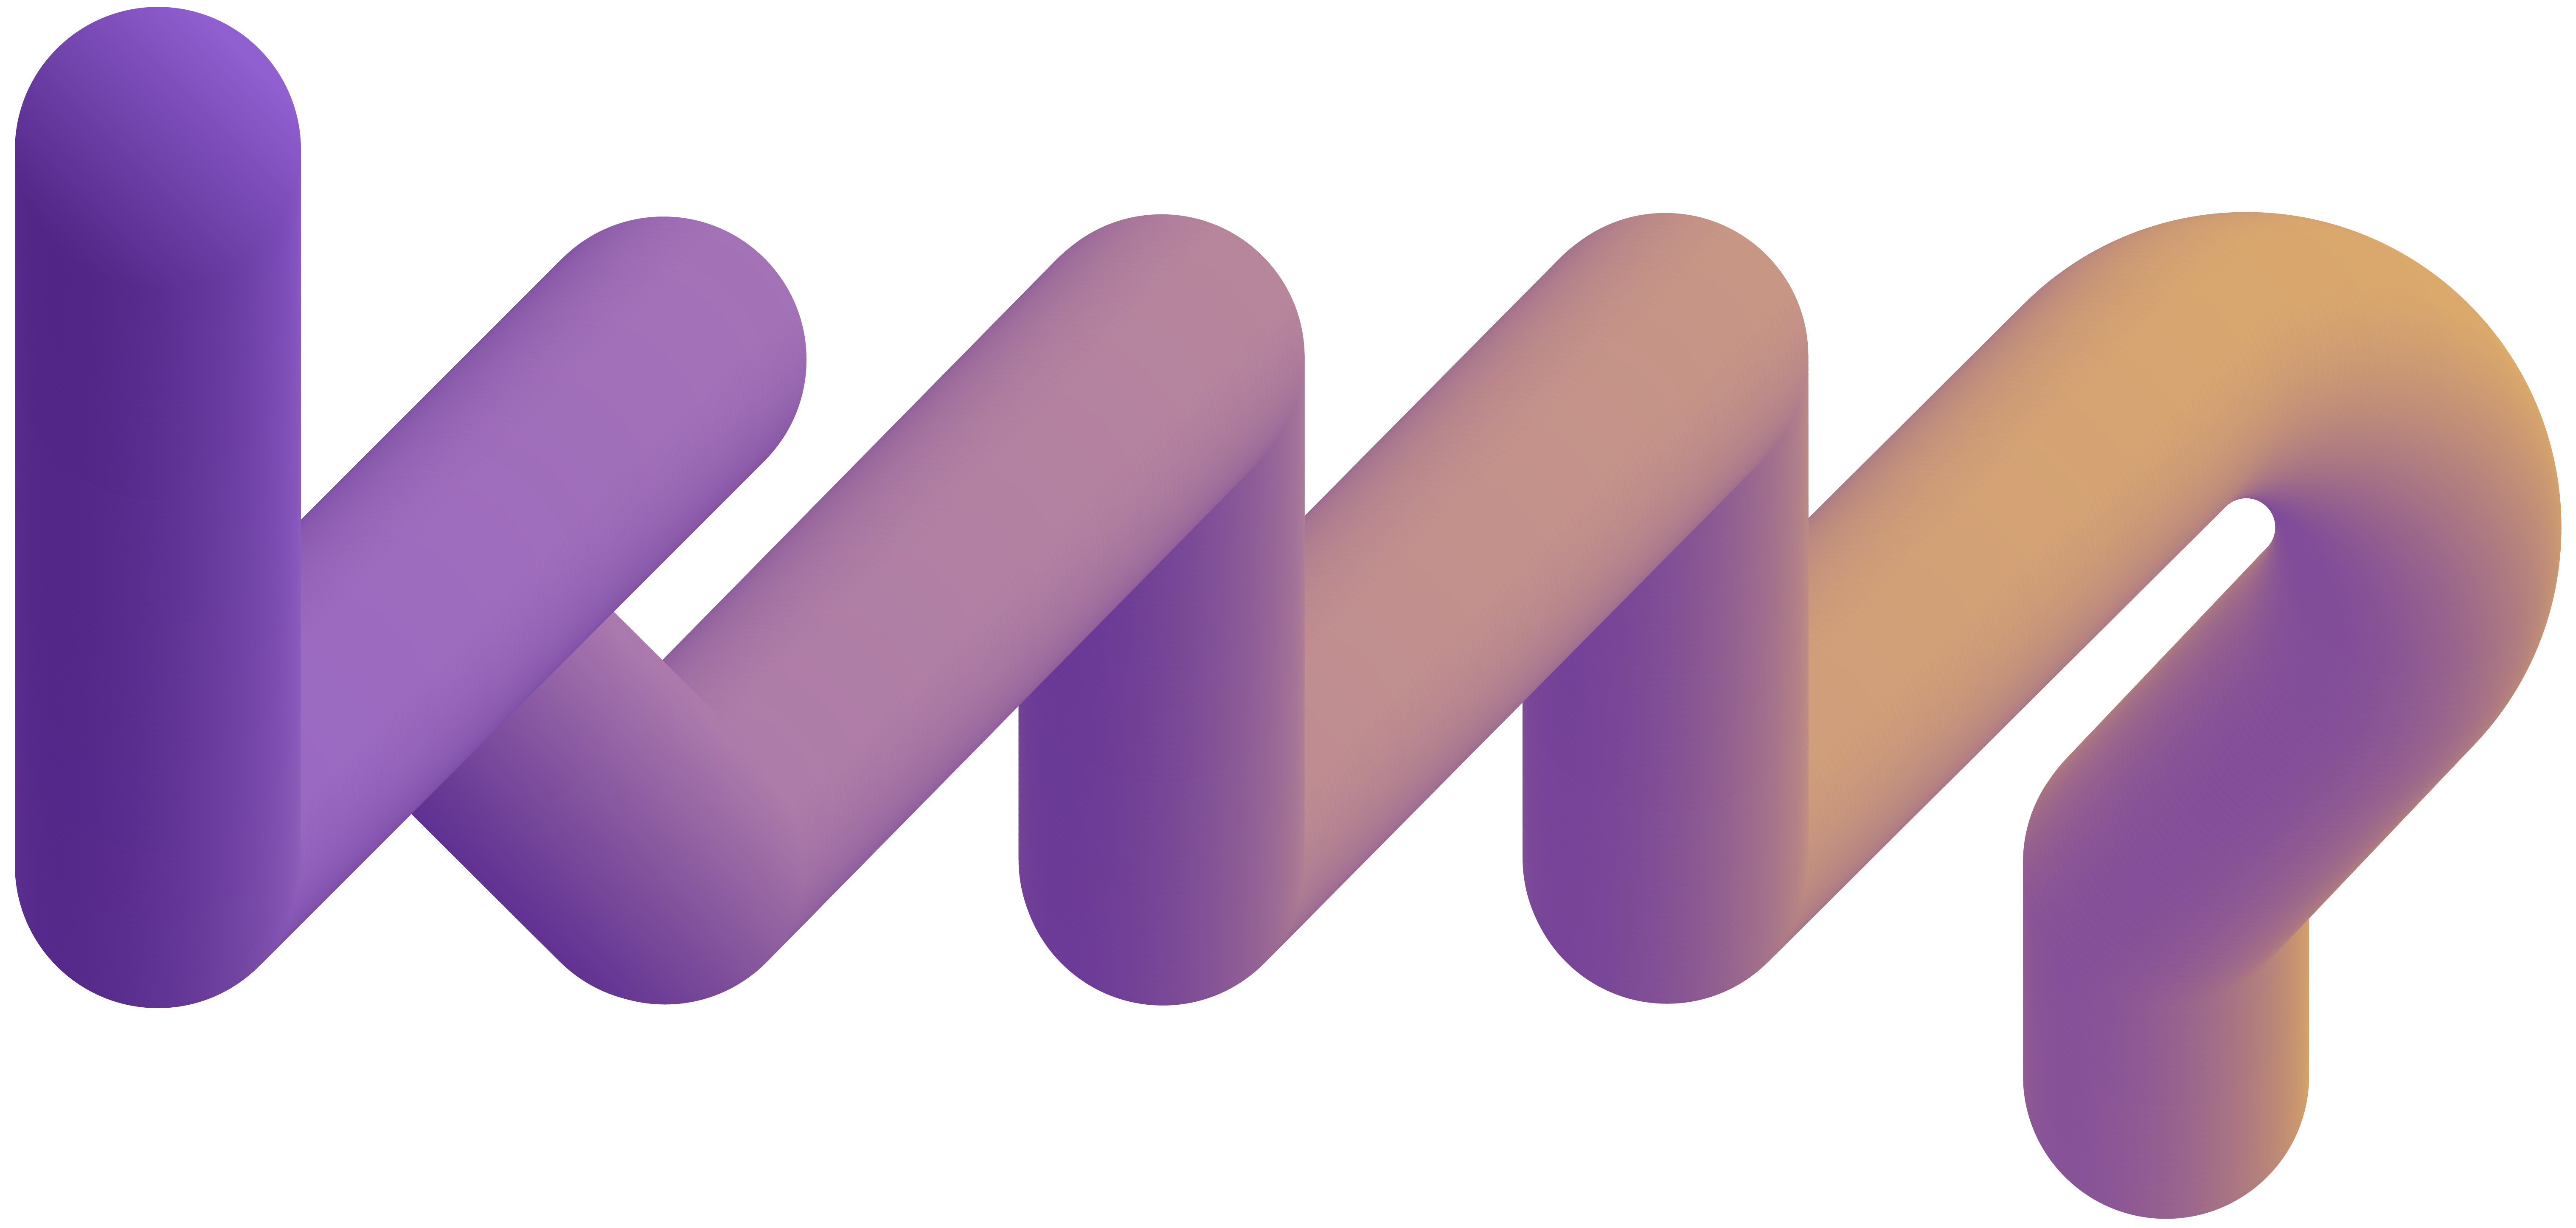 KMP Consultants Logo